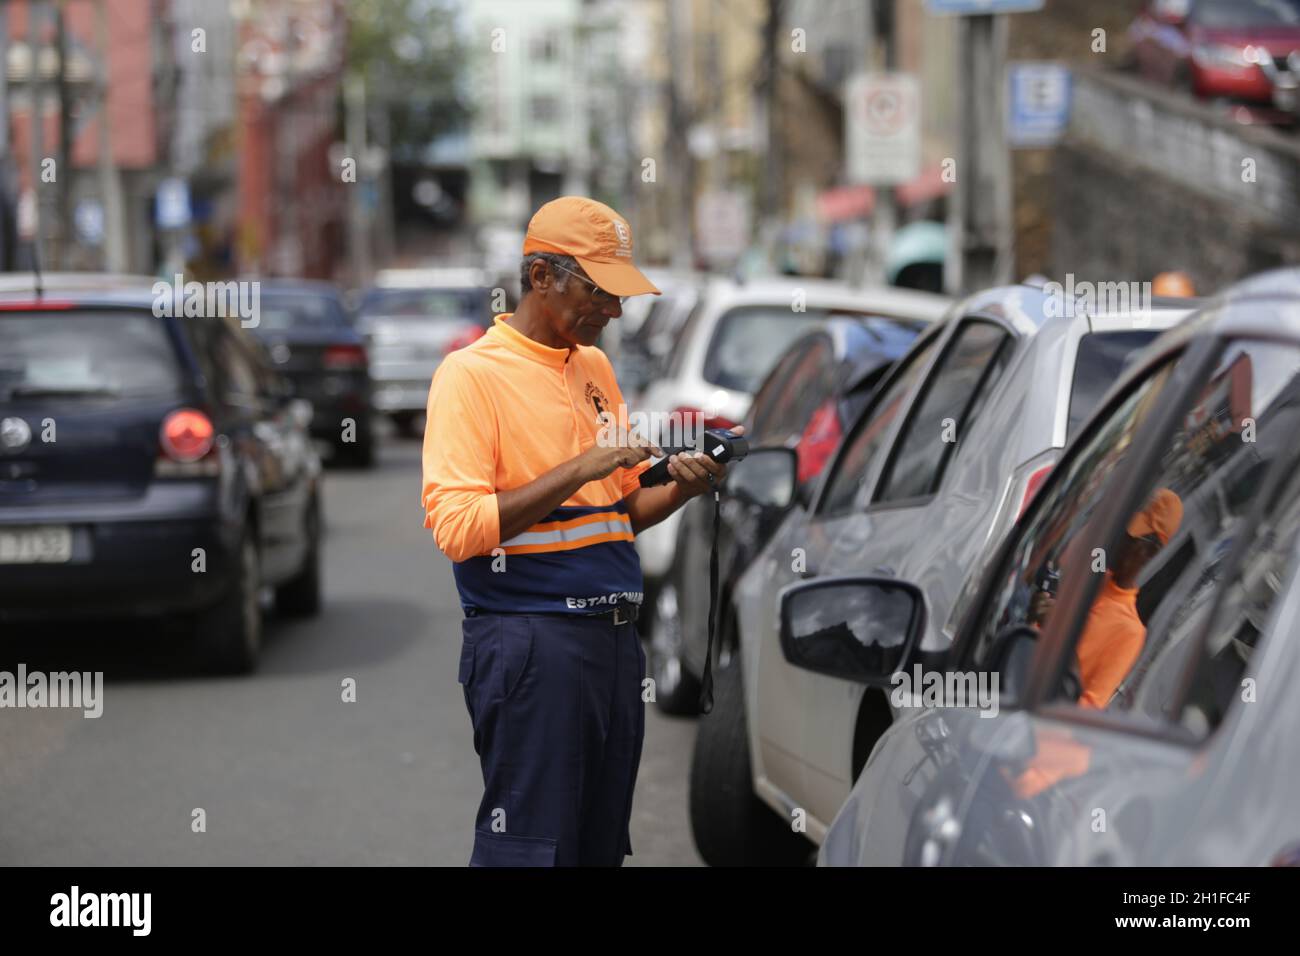 salvador, bahia / brasilien - 3. juni 2019: Blue Zone Operation Agent wird in der Stadt Salvador Fahrerparkgebühren berechnen sehen. *** Ortsüberschrift *** Stockfoto